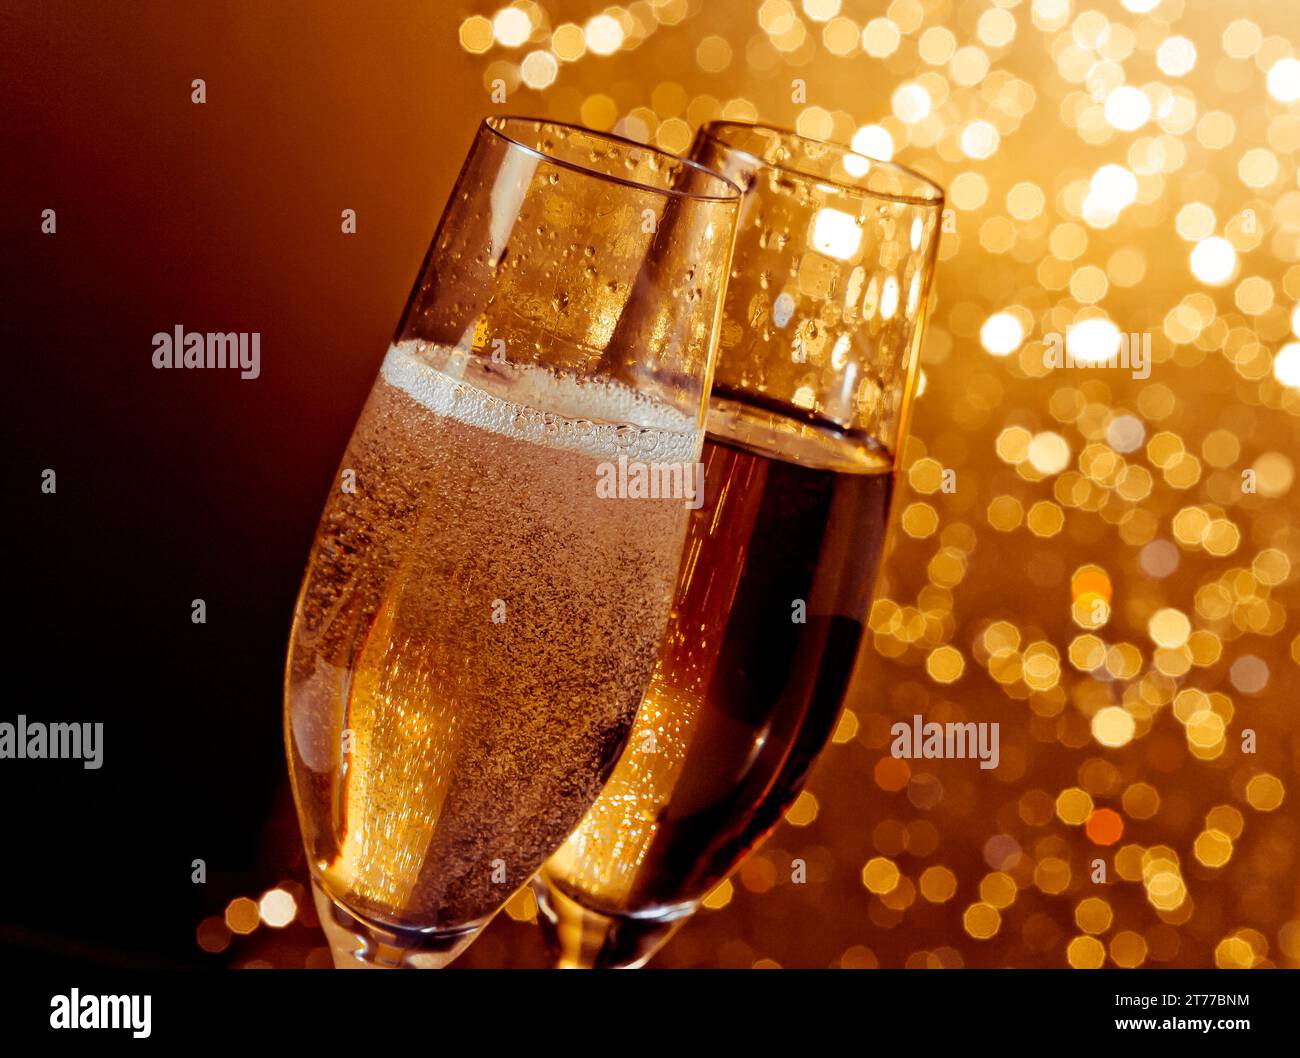 dettaglio di flauti di champagne con bolle dorate su sfondo bokeh caldo e chiaro con spazio per il testo Foto Stock